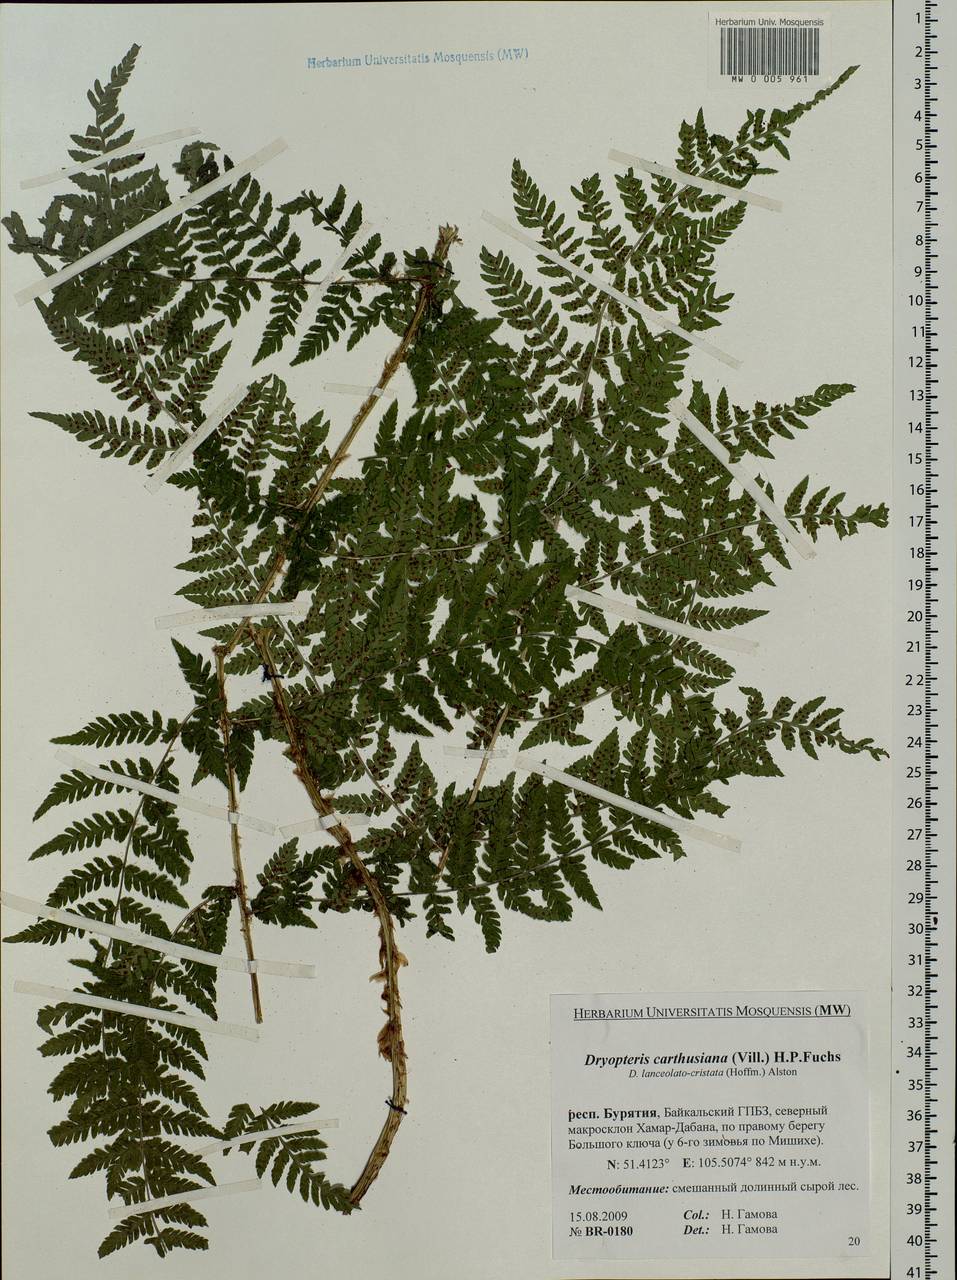 Dryopteris carthusiana (Vill.) H. P. Fuchs, Siberia, Baikal & Transbaikal region (S4) (Russia)